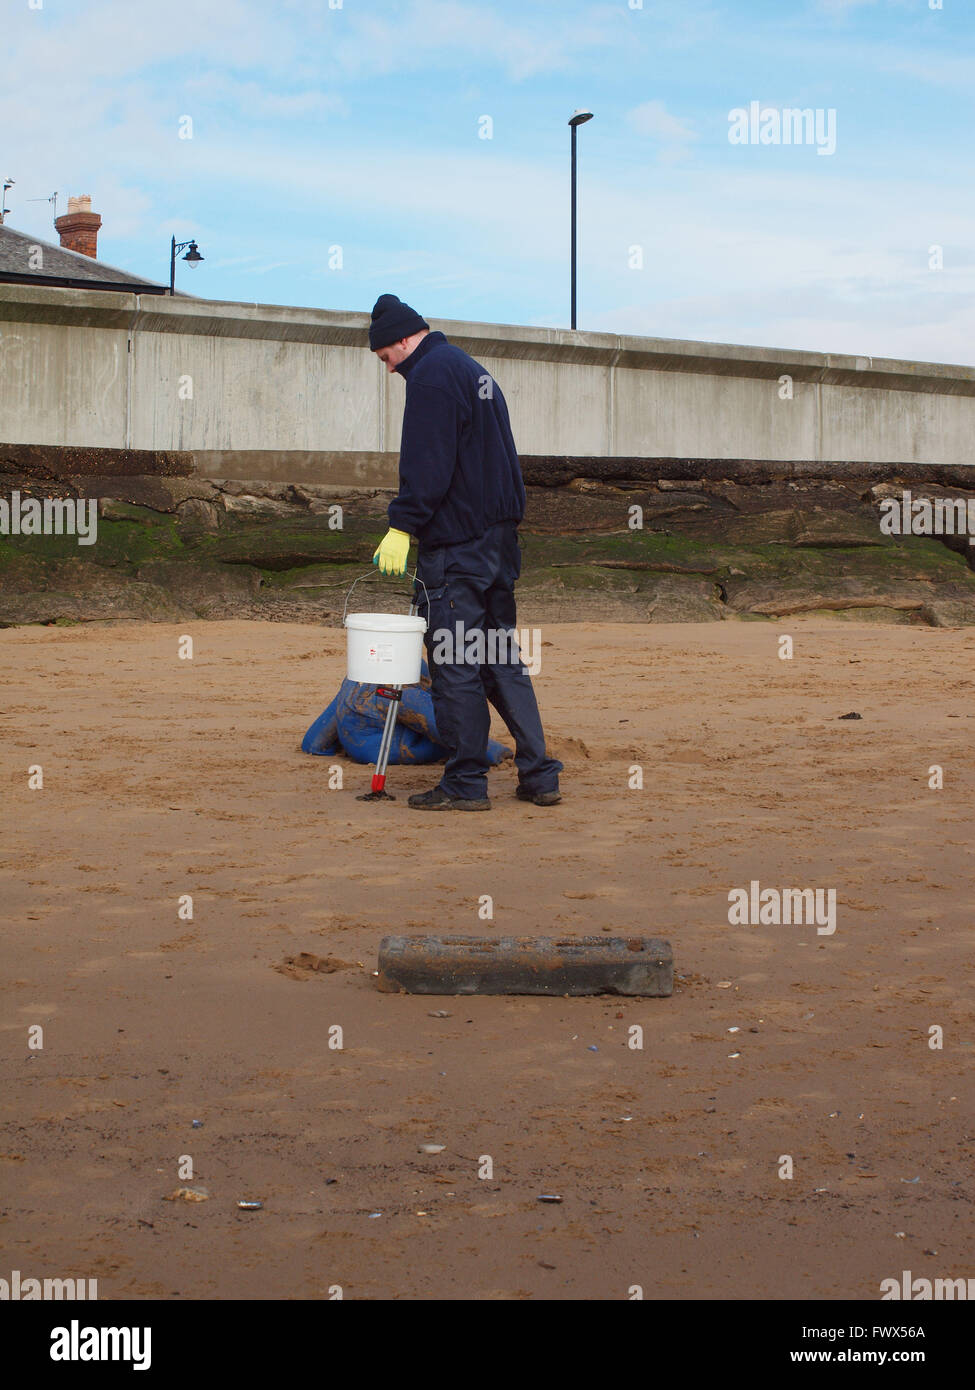 Newcastle Upon Tyne, venerdì 8 aprile 2016, Uk News. La conservazione delle risorse marine volontari raccolta di detriti dalla riva del mare in una lettiera sponsorizzati pick per aiutare a proteggere la vita marina a Tynemouth. Credito: James Walsh Alamy/Live News Foto Stock